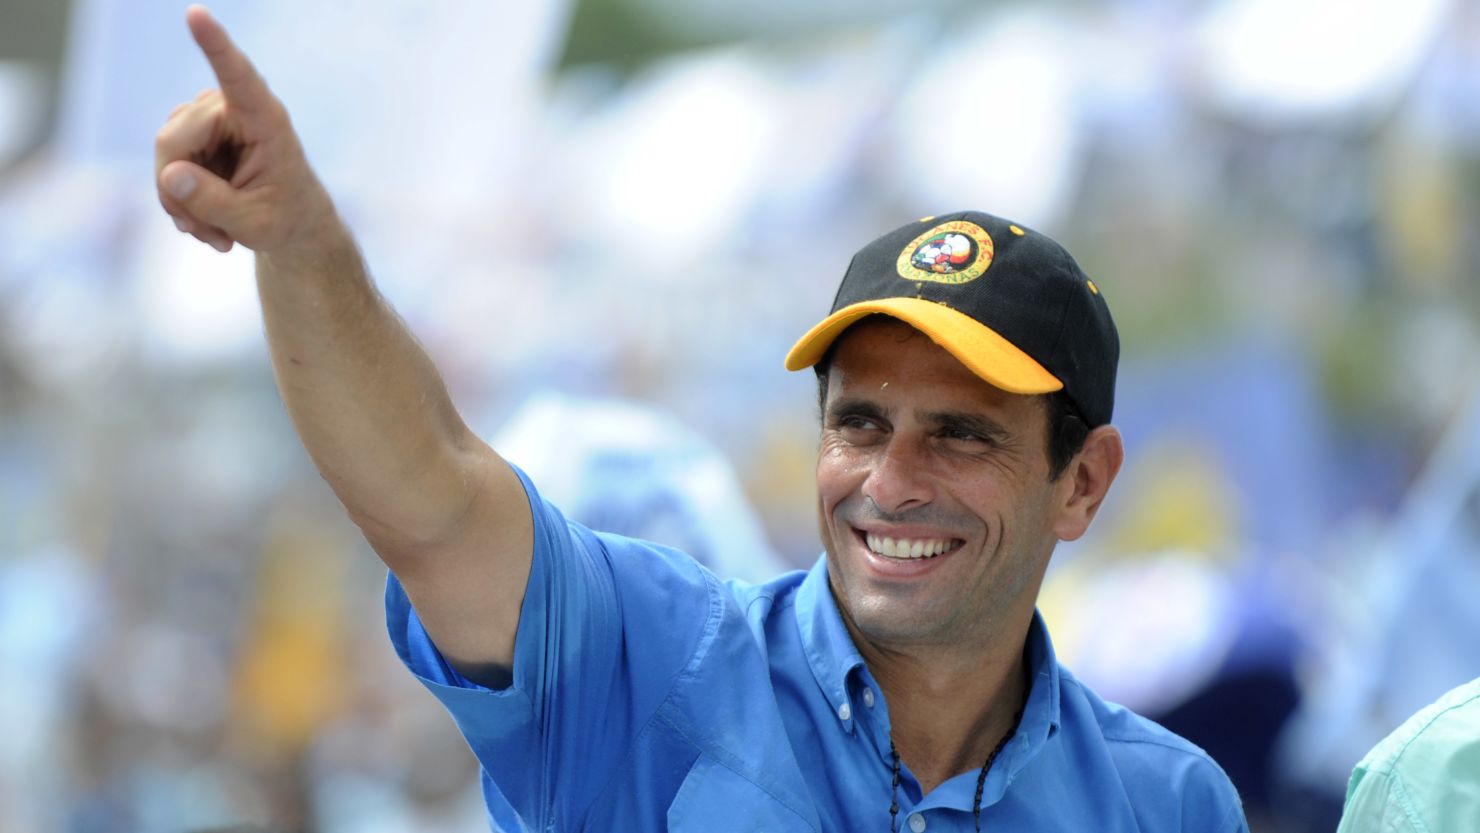 Venezuelan opposition leader Henrique Capriles Radonski gestures during a campaign rally on October 1.